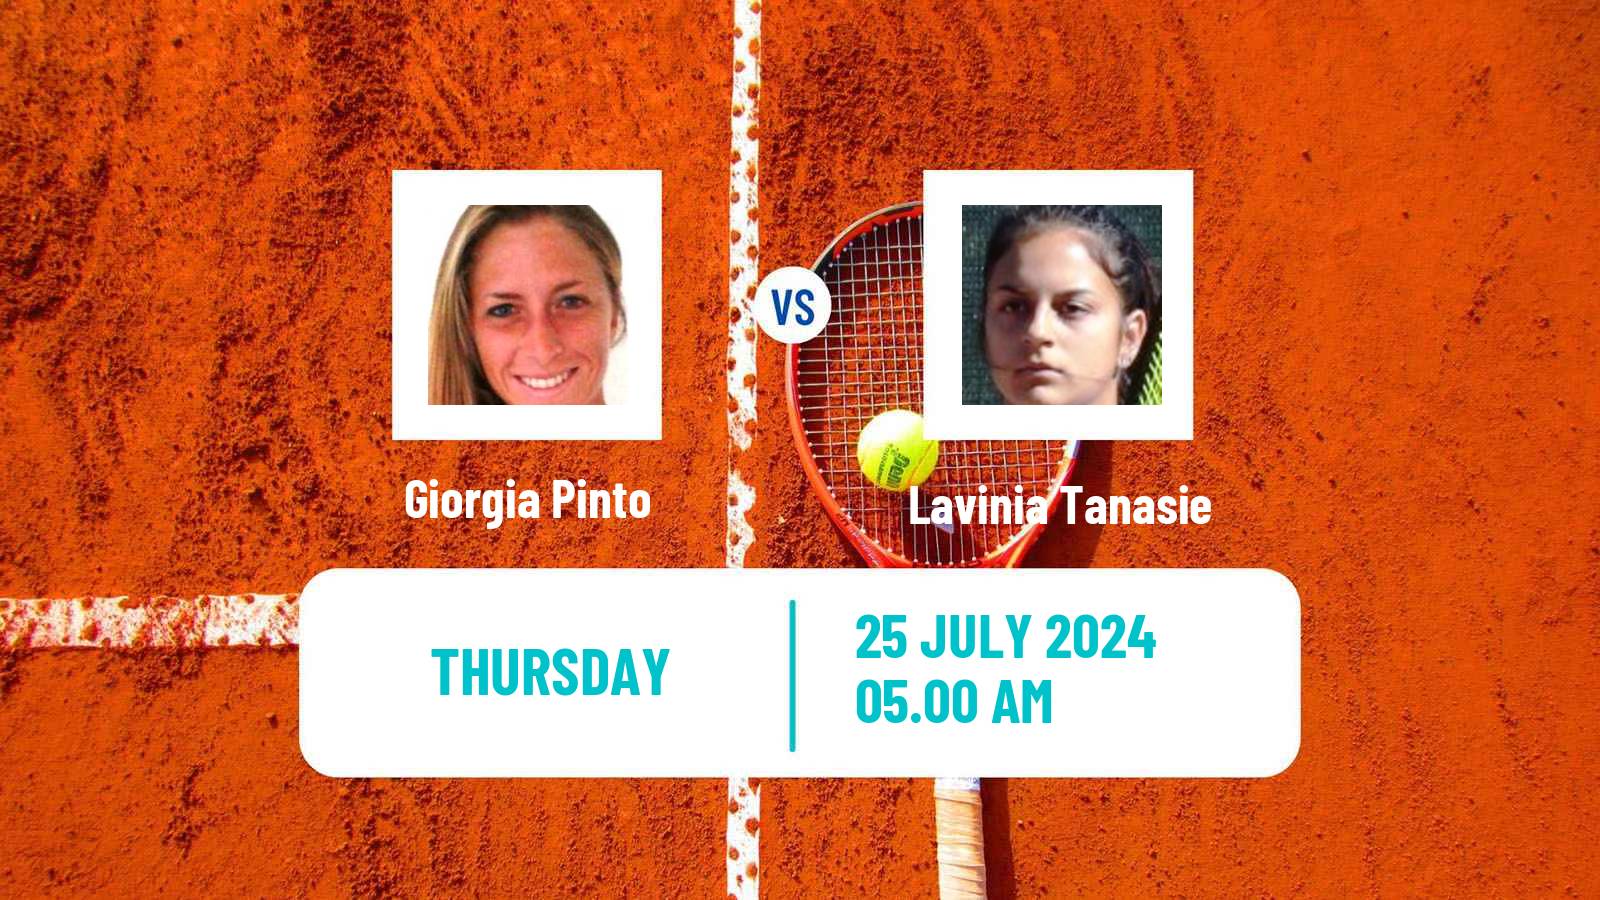 Tennis ITF W15 Satu Mare Women Giorgia Pinto - Lavinia Tanasie